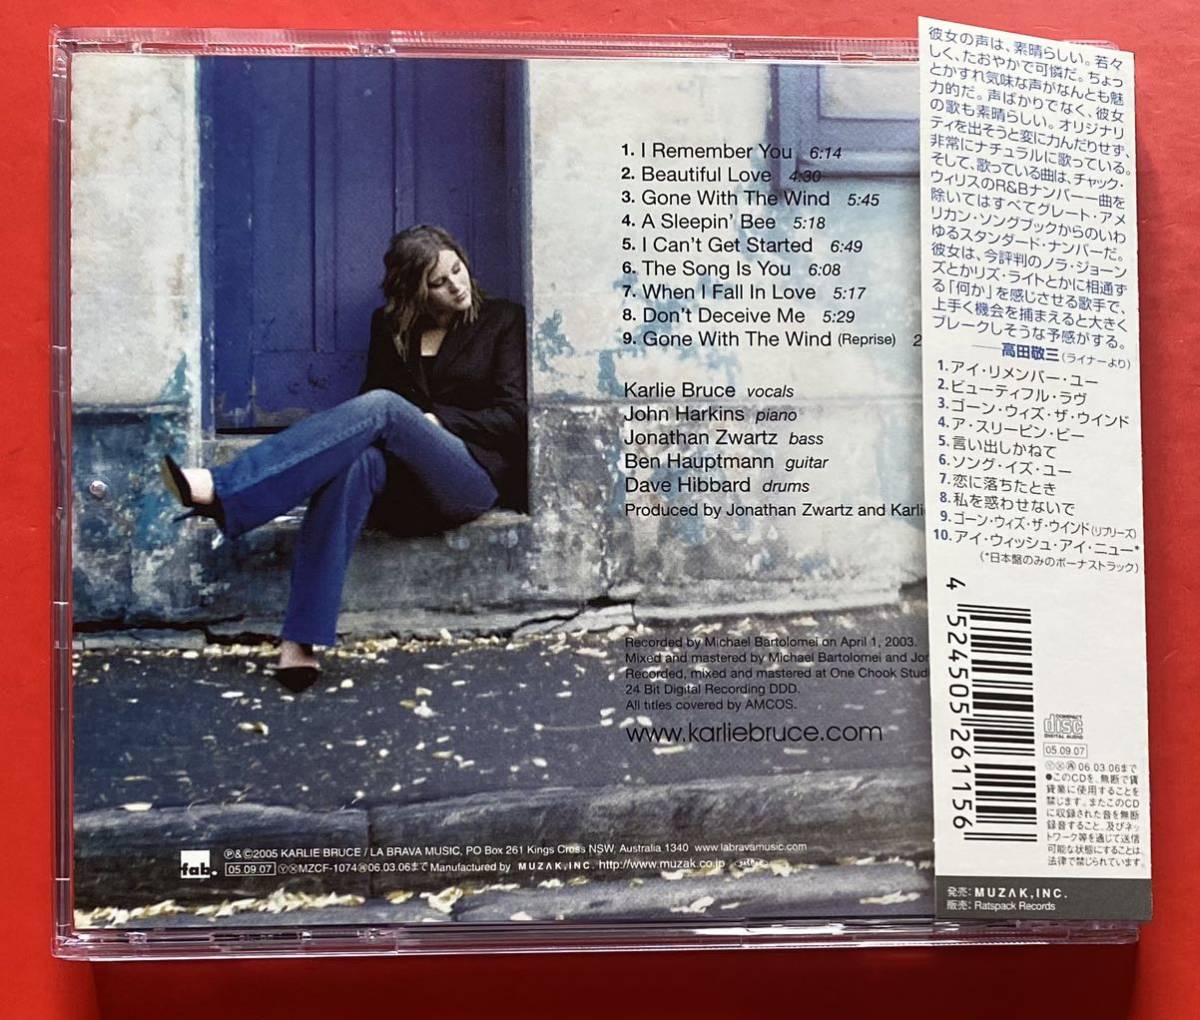 【美品CD】カーリー・ブルース「ソング・イズ・ユー / KARLIE BRUCE +1」国内盤 ボーナストラックあり [03260397]_画像2